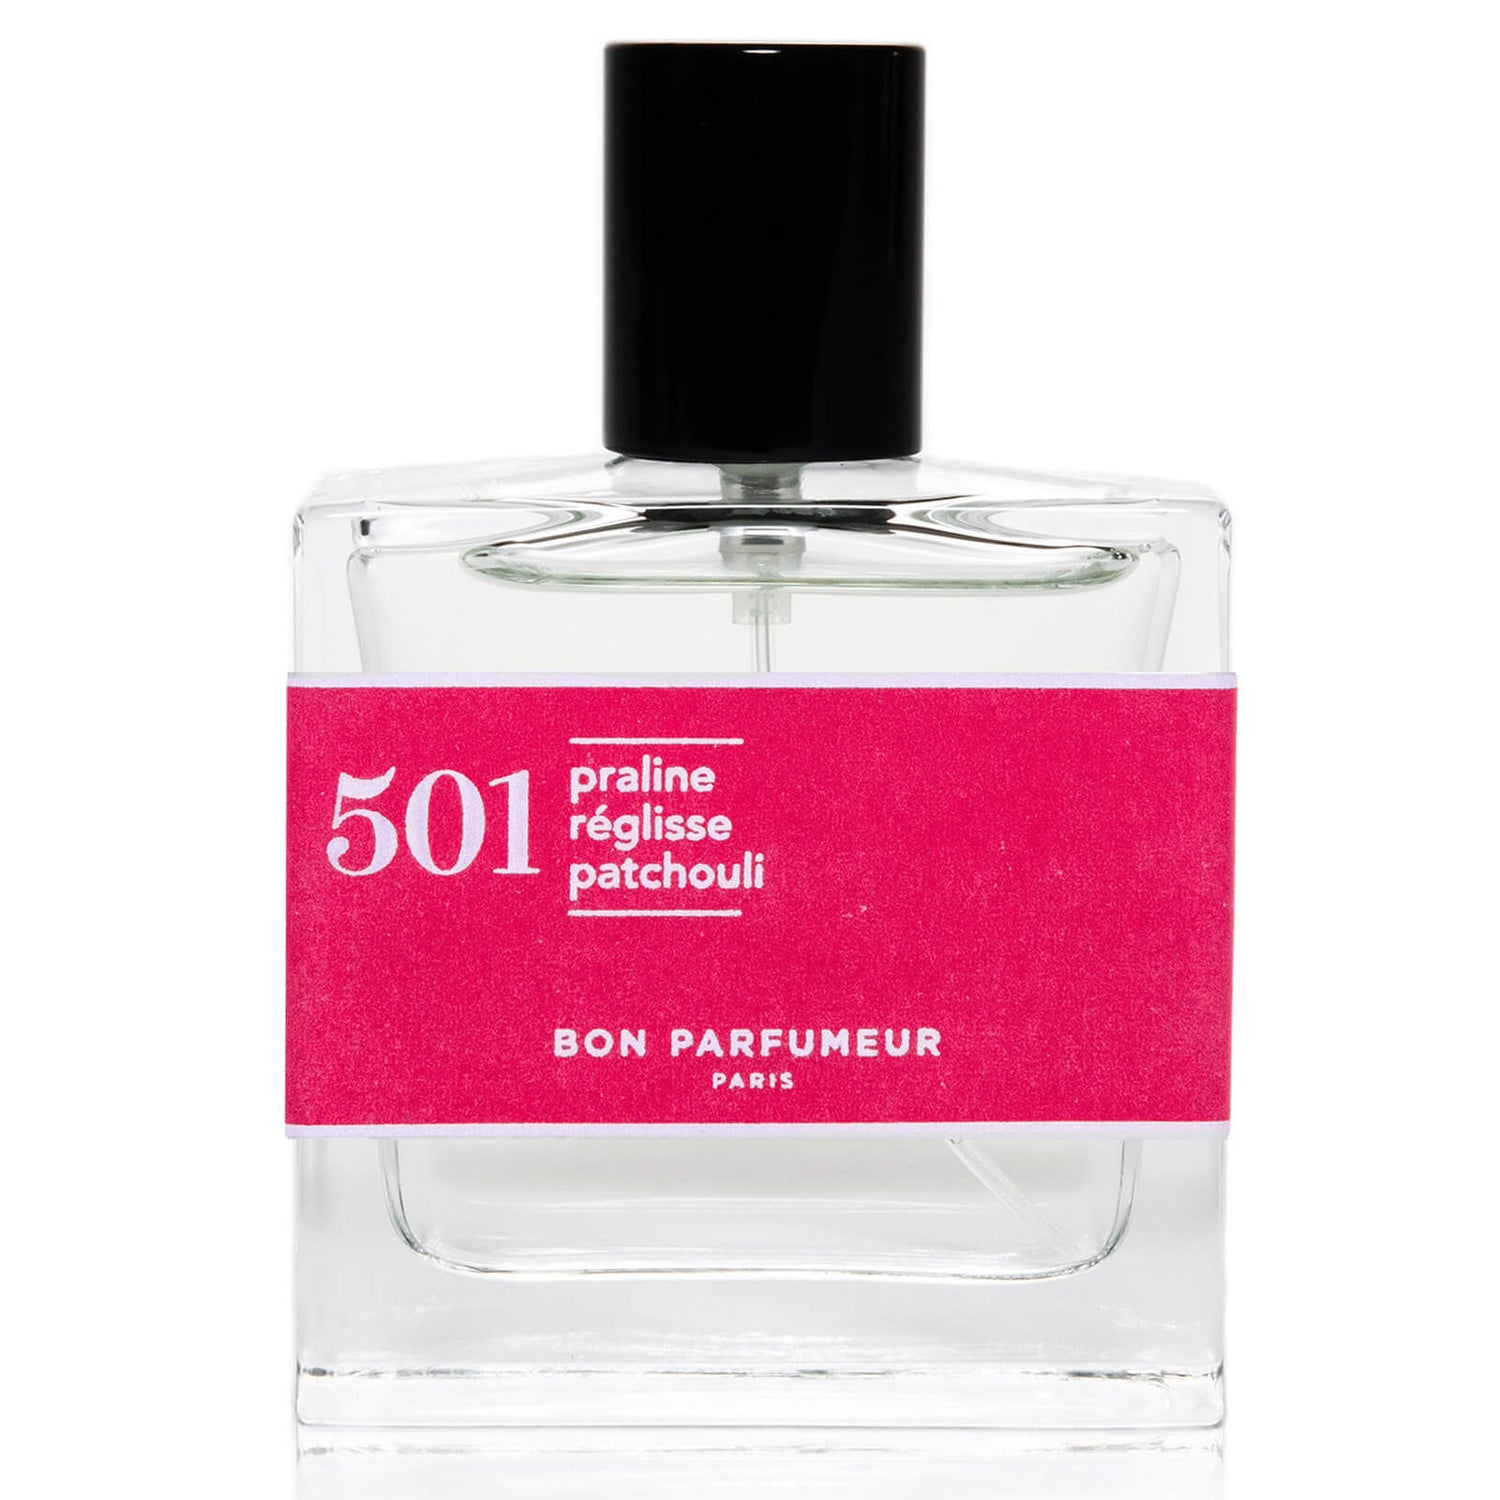 Bon Parfumeur 501 Praline Lakris Patchouli Eau de Parfum - 30ml